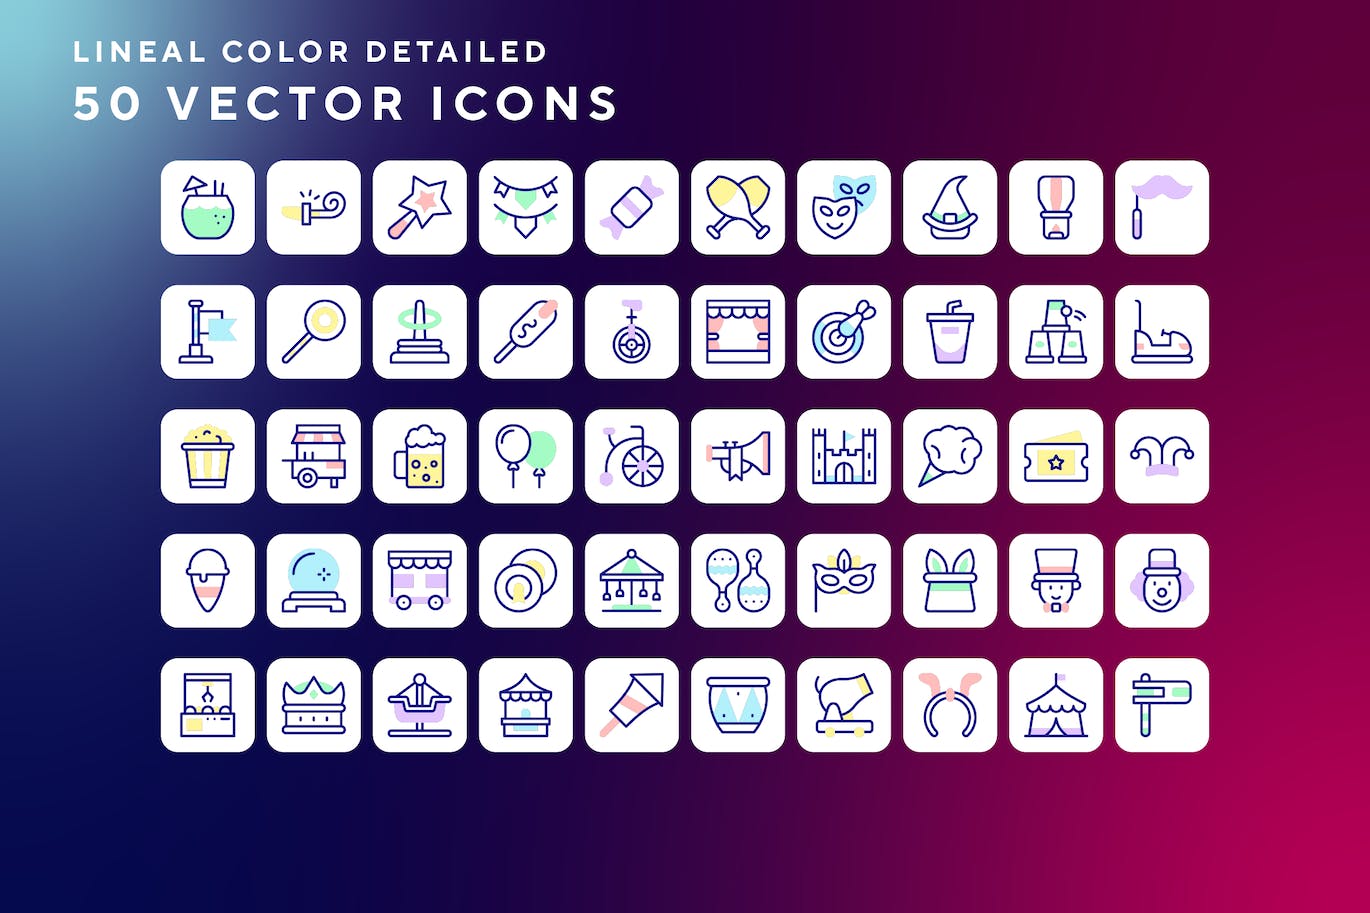 50枚狂欢节主题彩色线条矢量图标 Carnival icons 图标素材 第1张